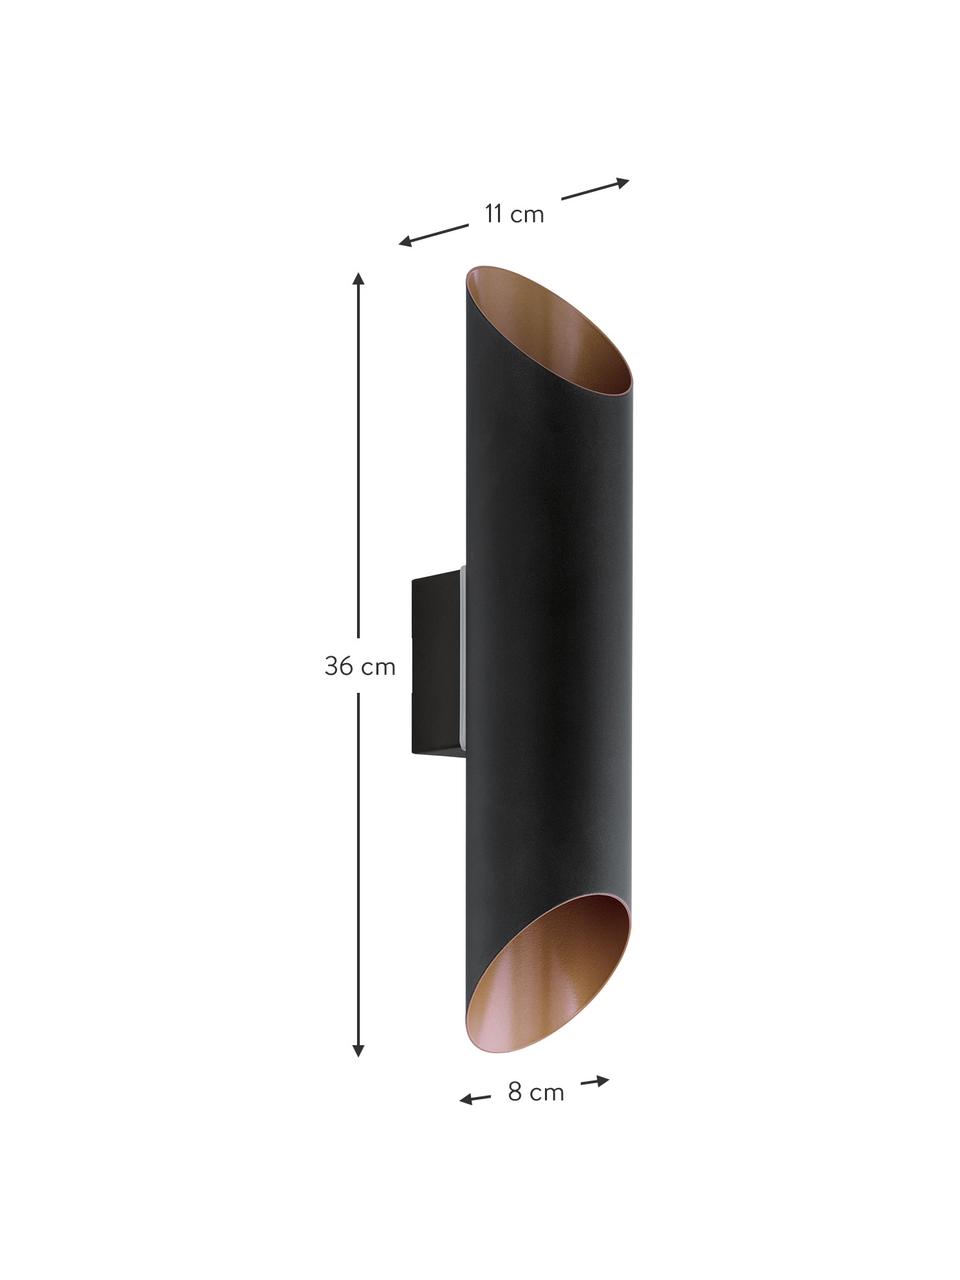 Outdoor wandlamp Agolada in zwart-koper, Lampenkap: verzinkt staal, Buitenzijde: zwart. Binnenzijde: koperkleurig, B 8 cm x H 36 cm